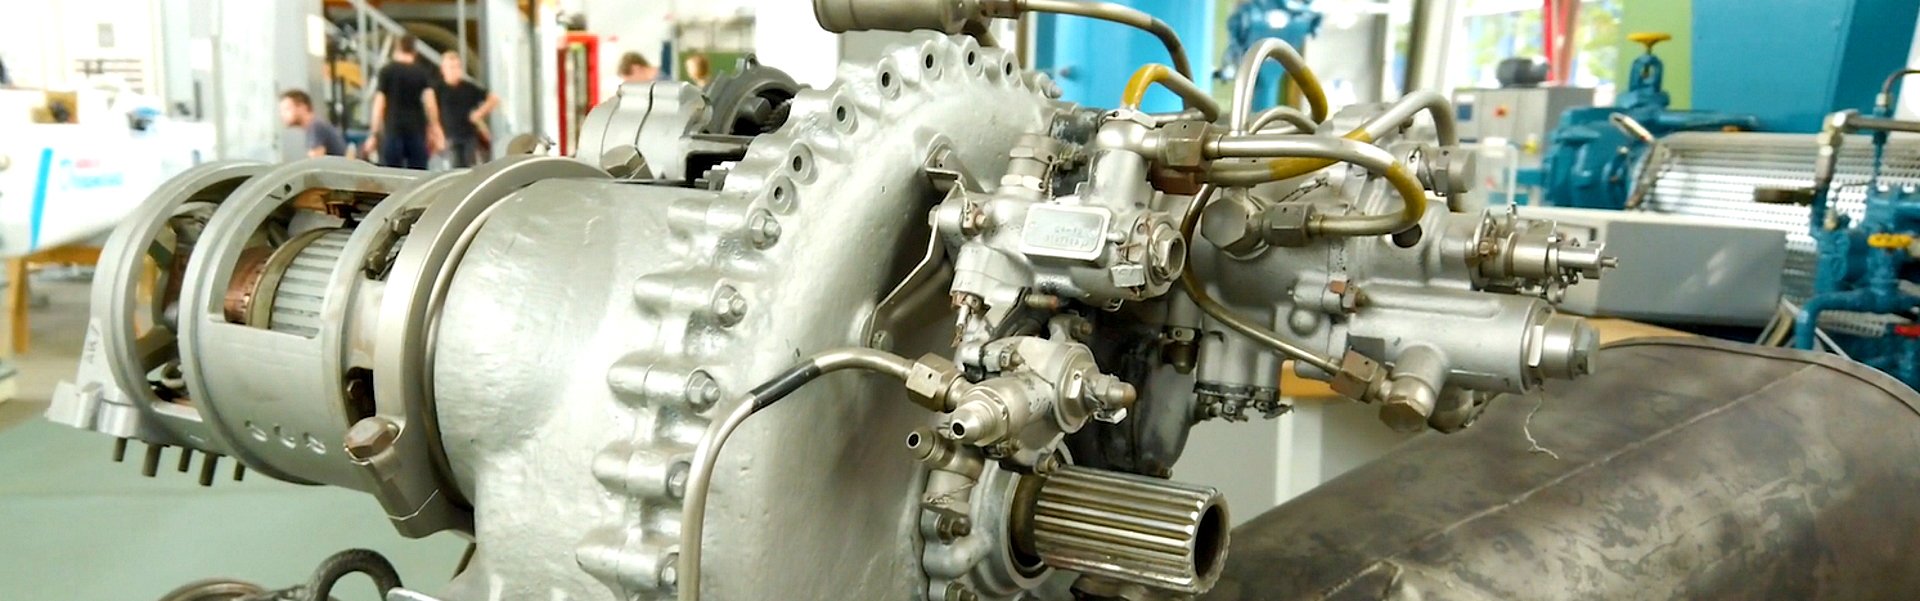 Detailfoto von einem Motor. 